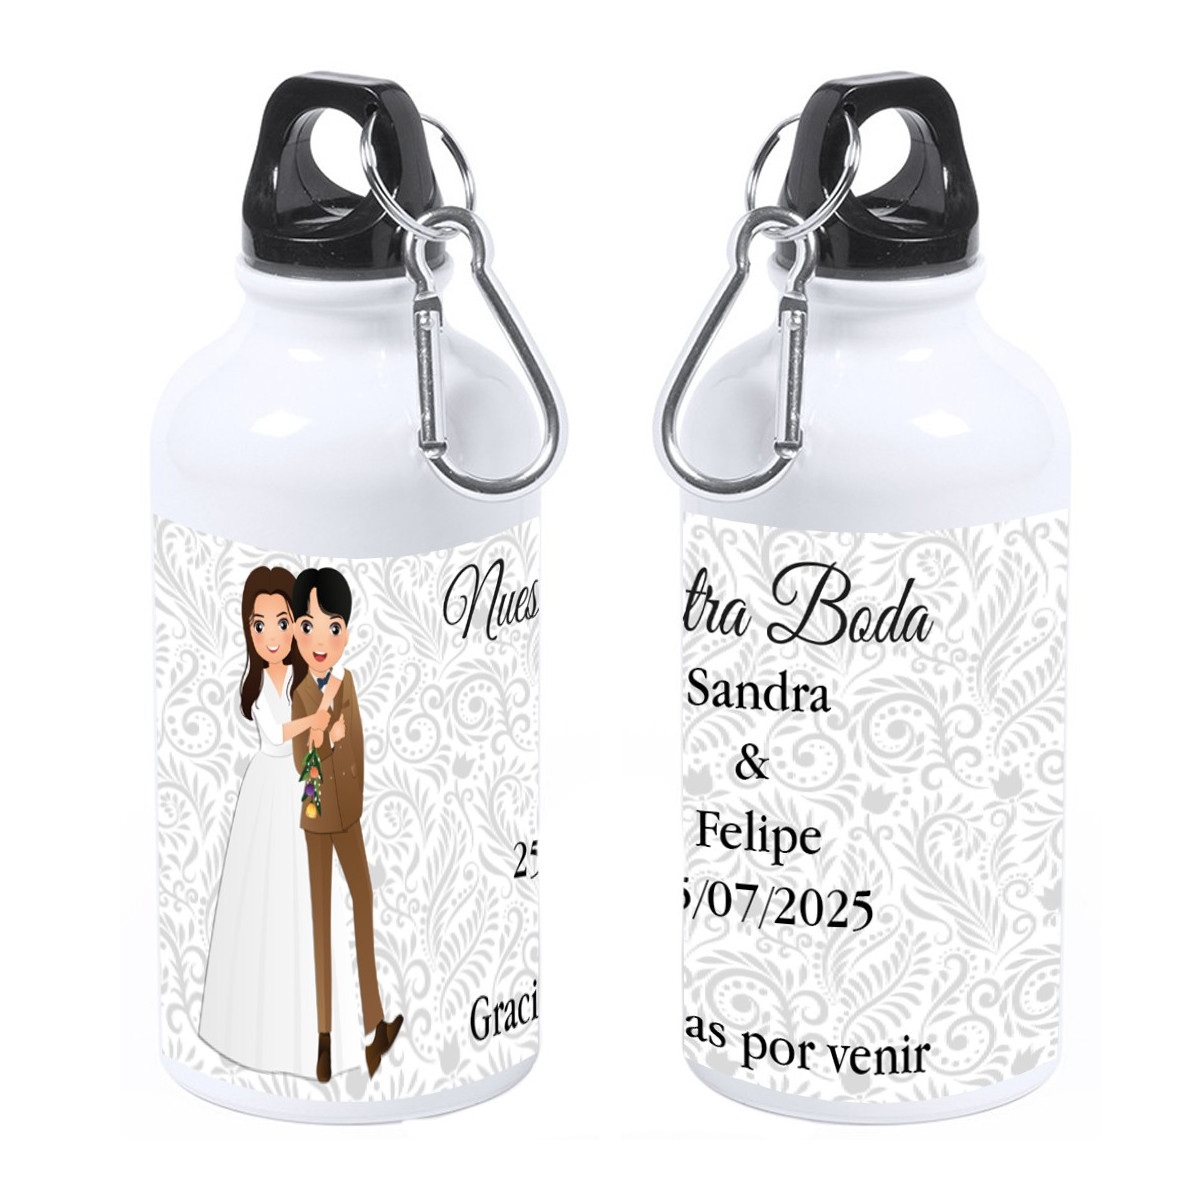 Bottiglia personalizzata con nome dell invitato o frase di ringraziamento nome degli sposi e data del matrimonio